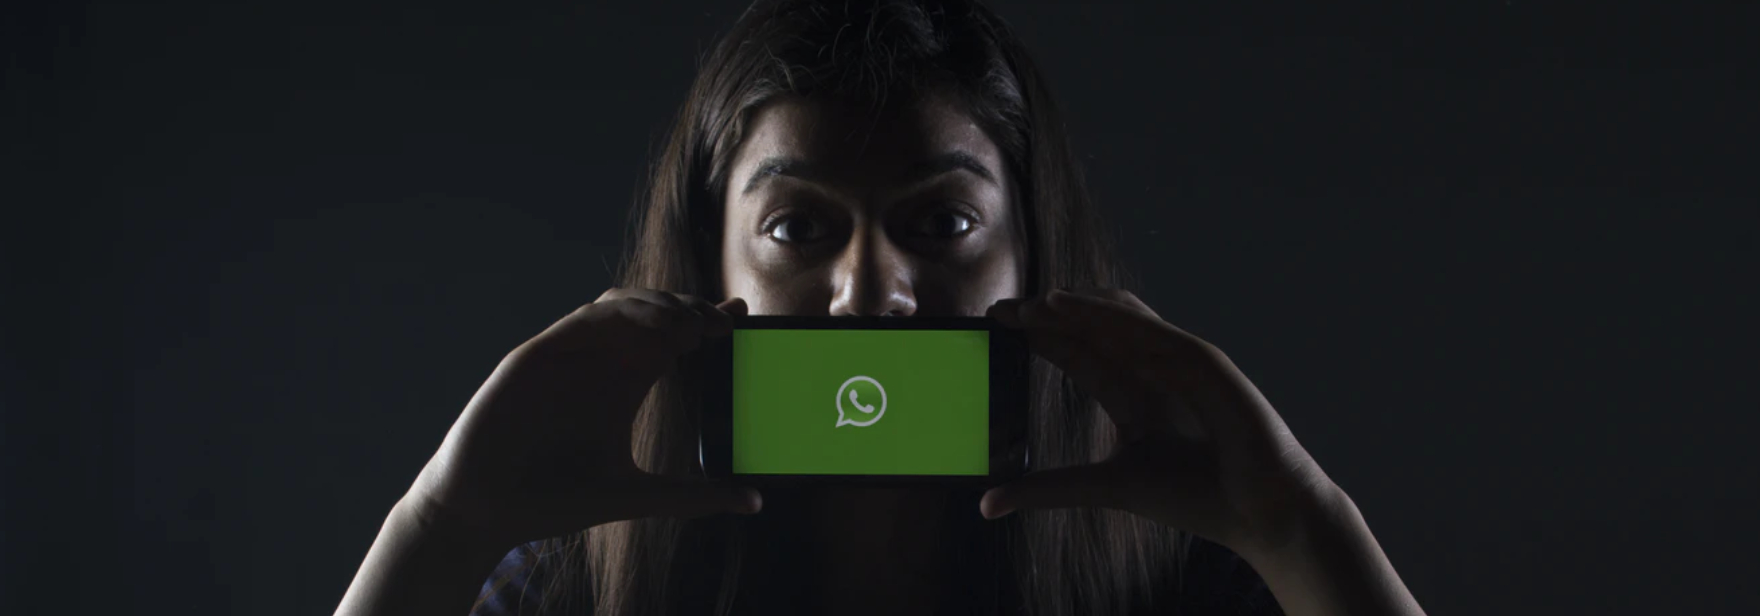 Facebook хочет анализировать сообщения в WhatsApp для таргетированной рекламы без их расшифровки